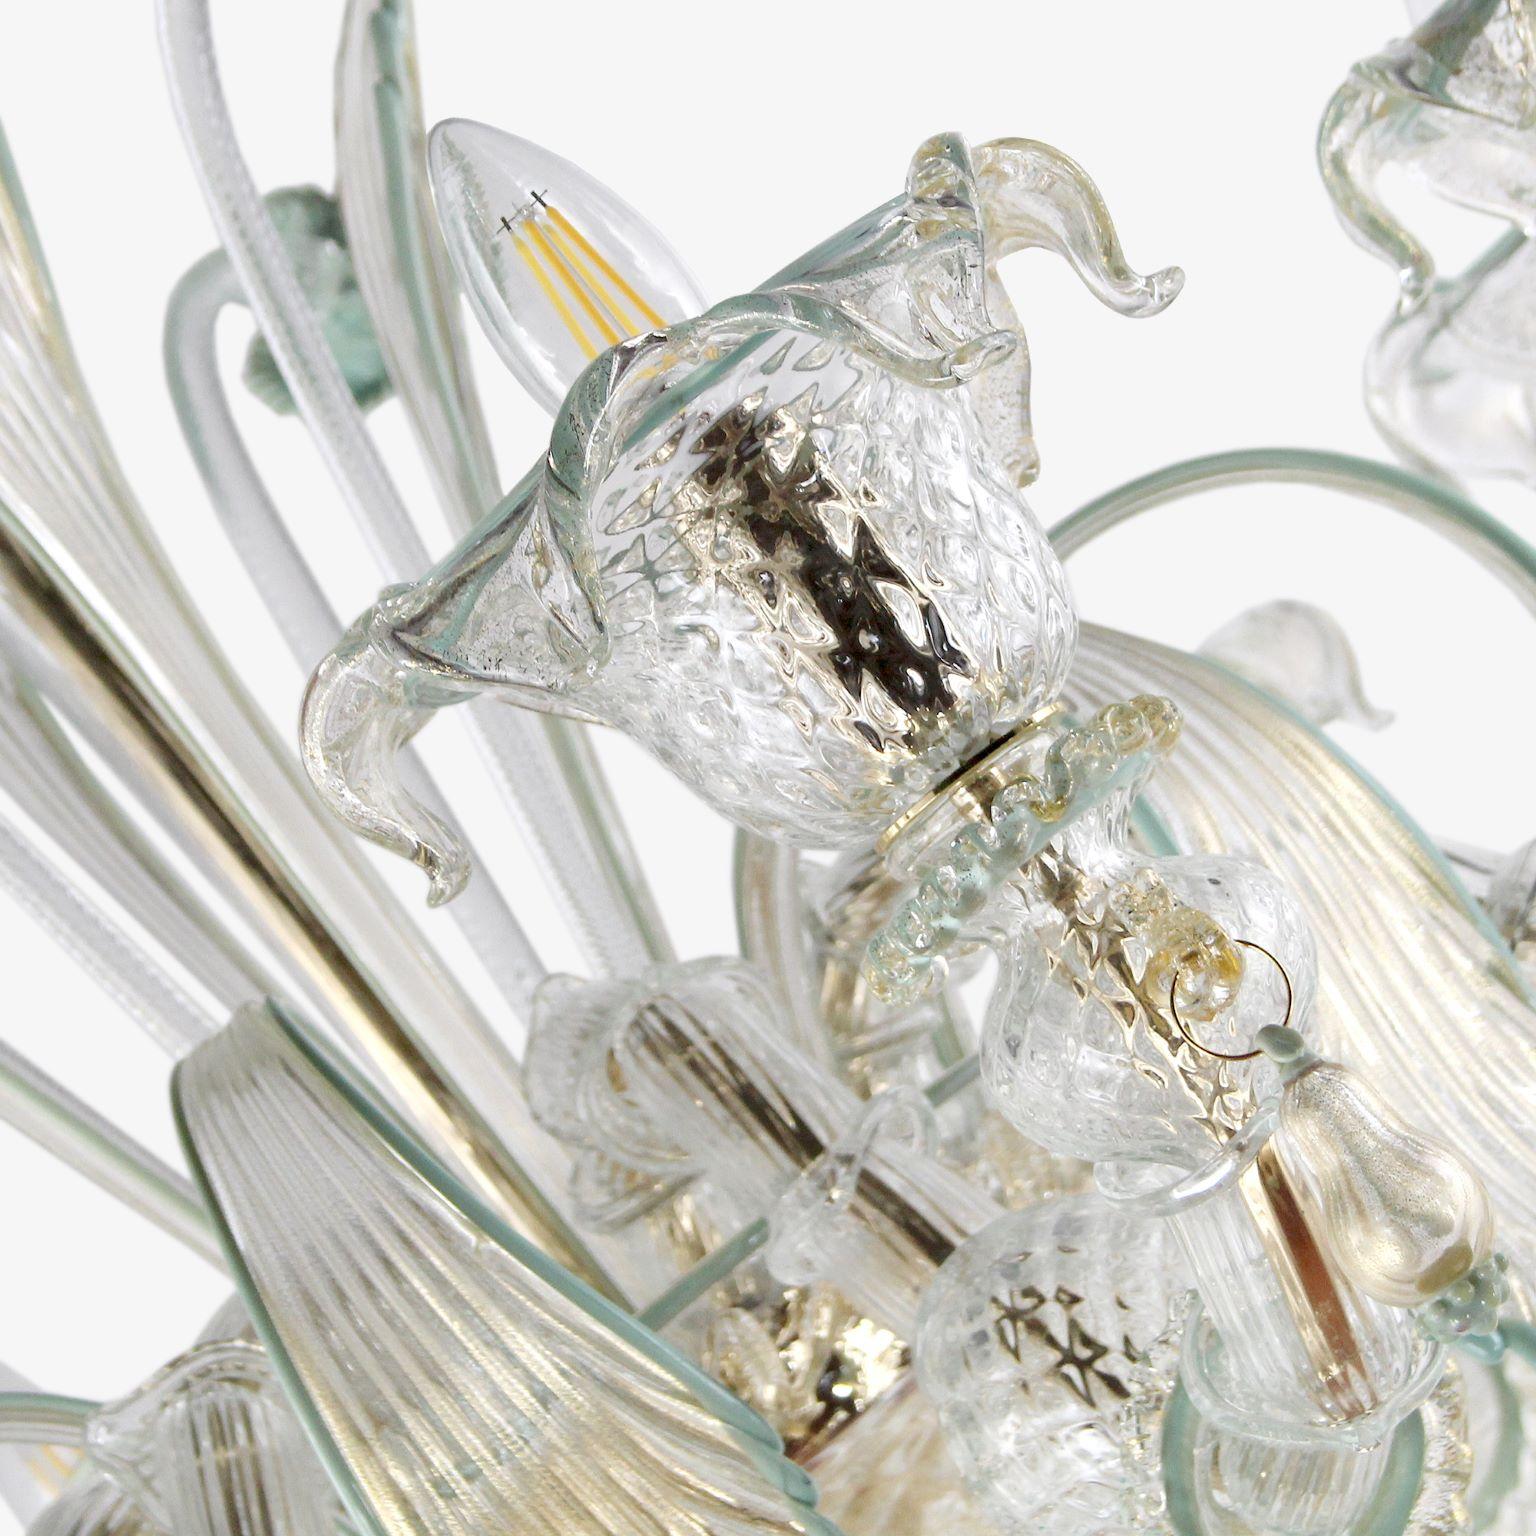 Lustre Rezzonico 8 bras, en cristal de Murano, avec des particularités de couleur or, vert et gris par MULTIFORME.
Ce lustre artistique en verre est une œuvre d'éclairage élégante et délicate, colorée avec des tons pastel. La structure est une